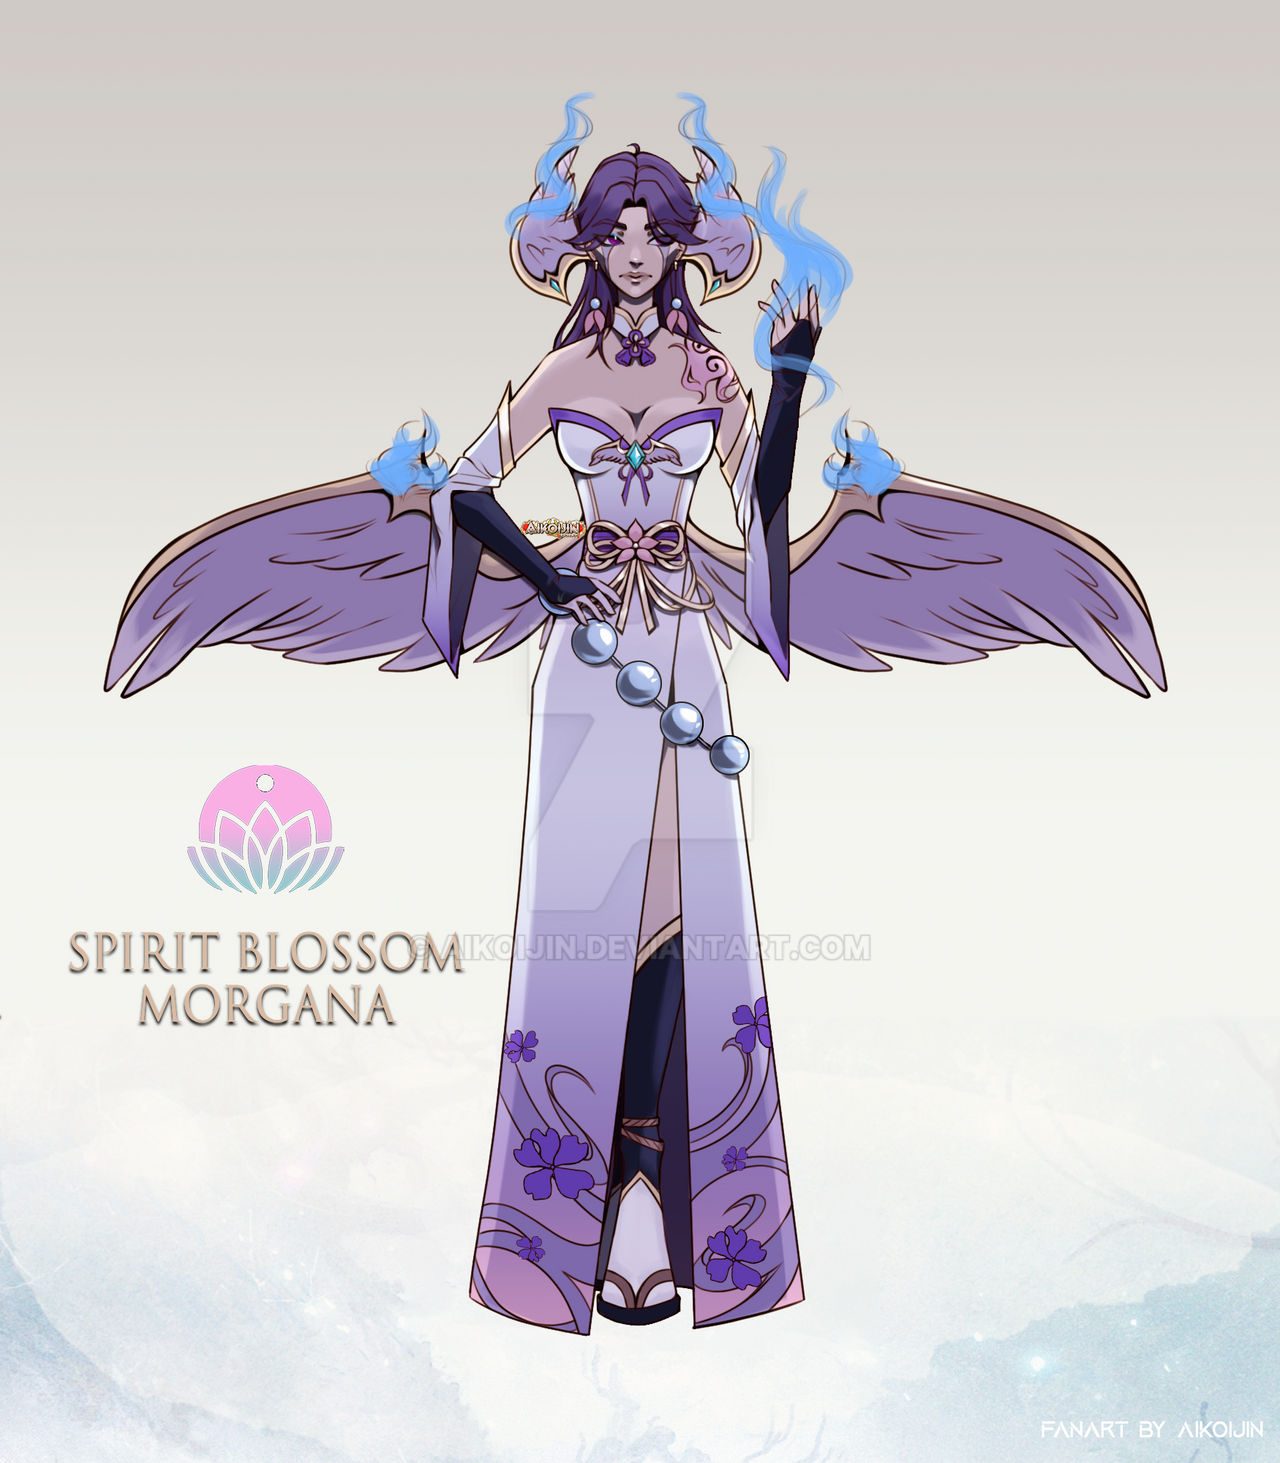 Yoru - Spirit Blossom Janna 🌸